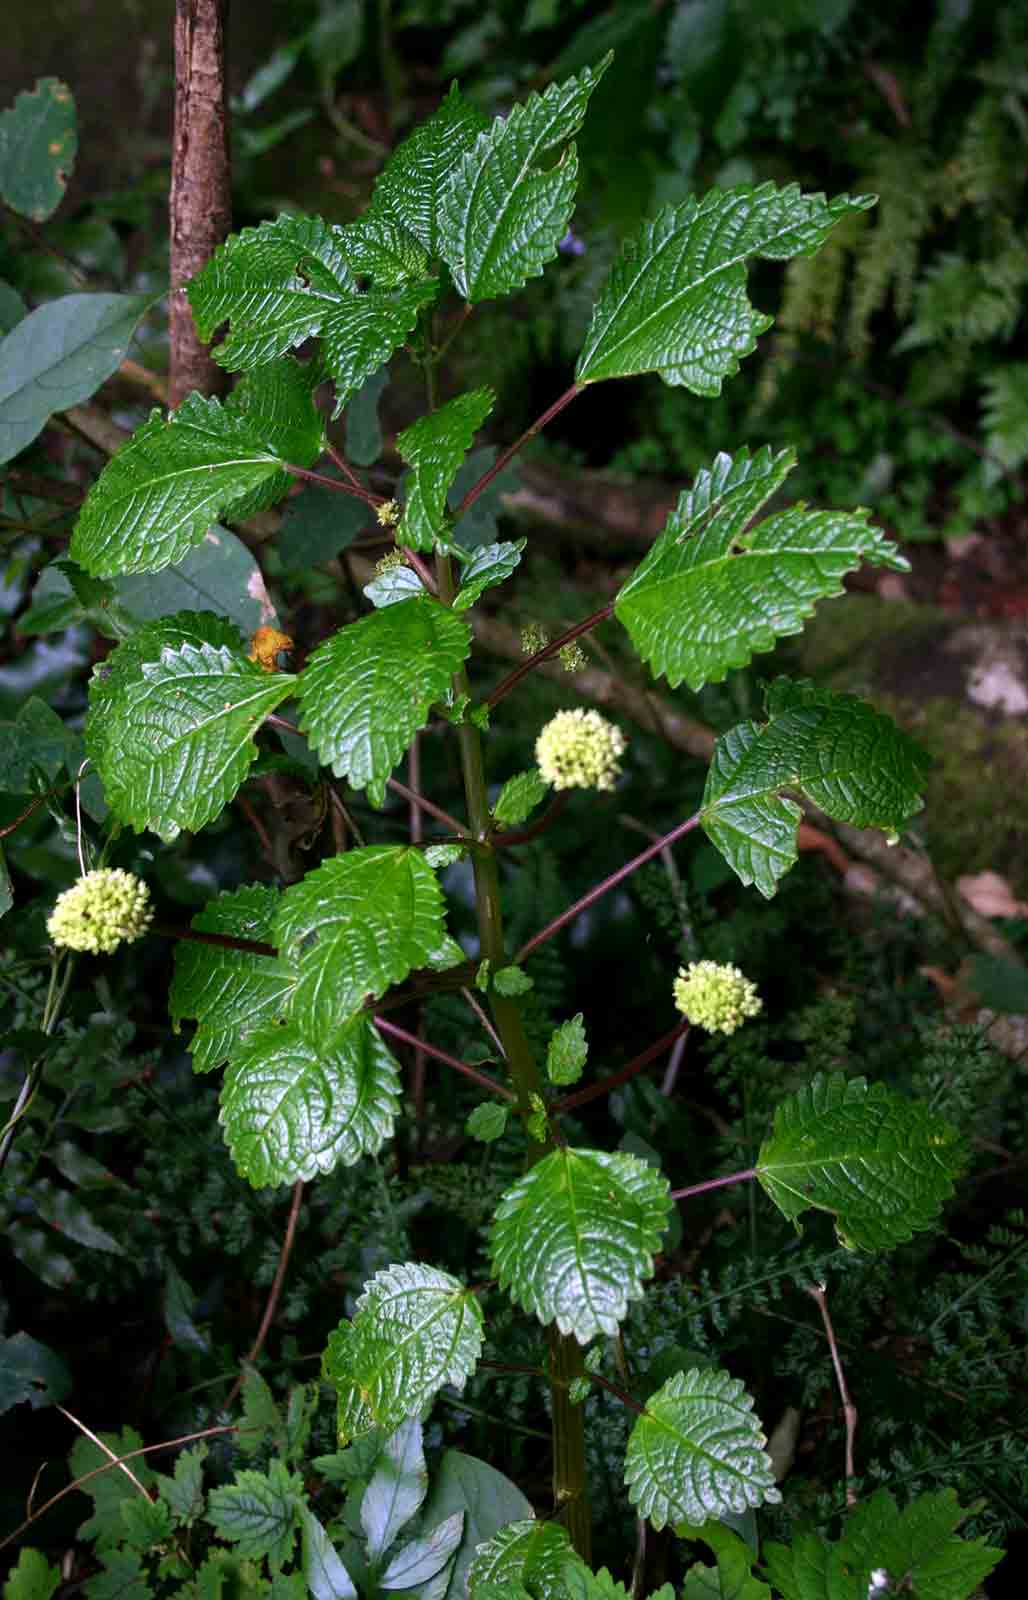 Pilea johnstonii subsp. johnstonii